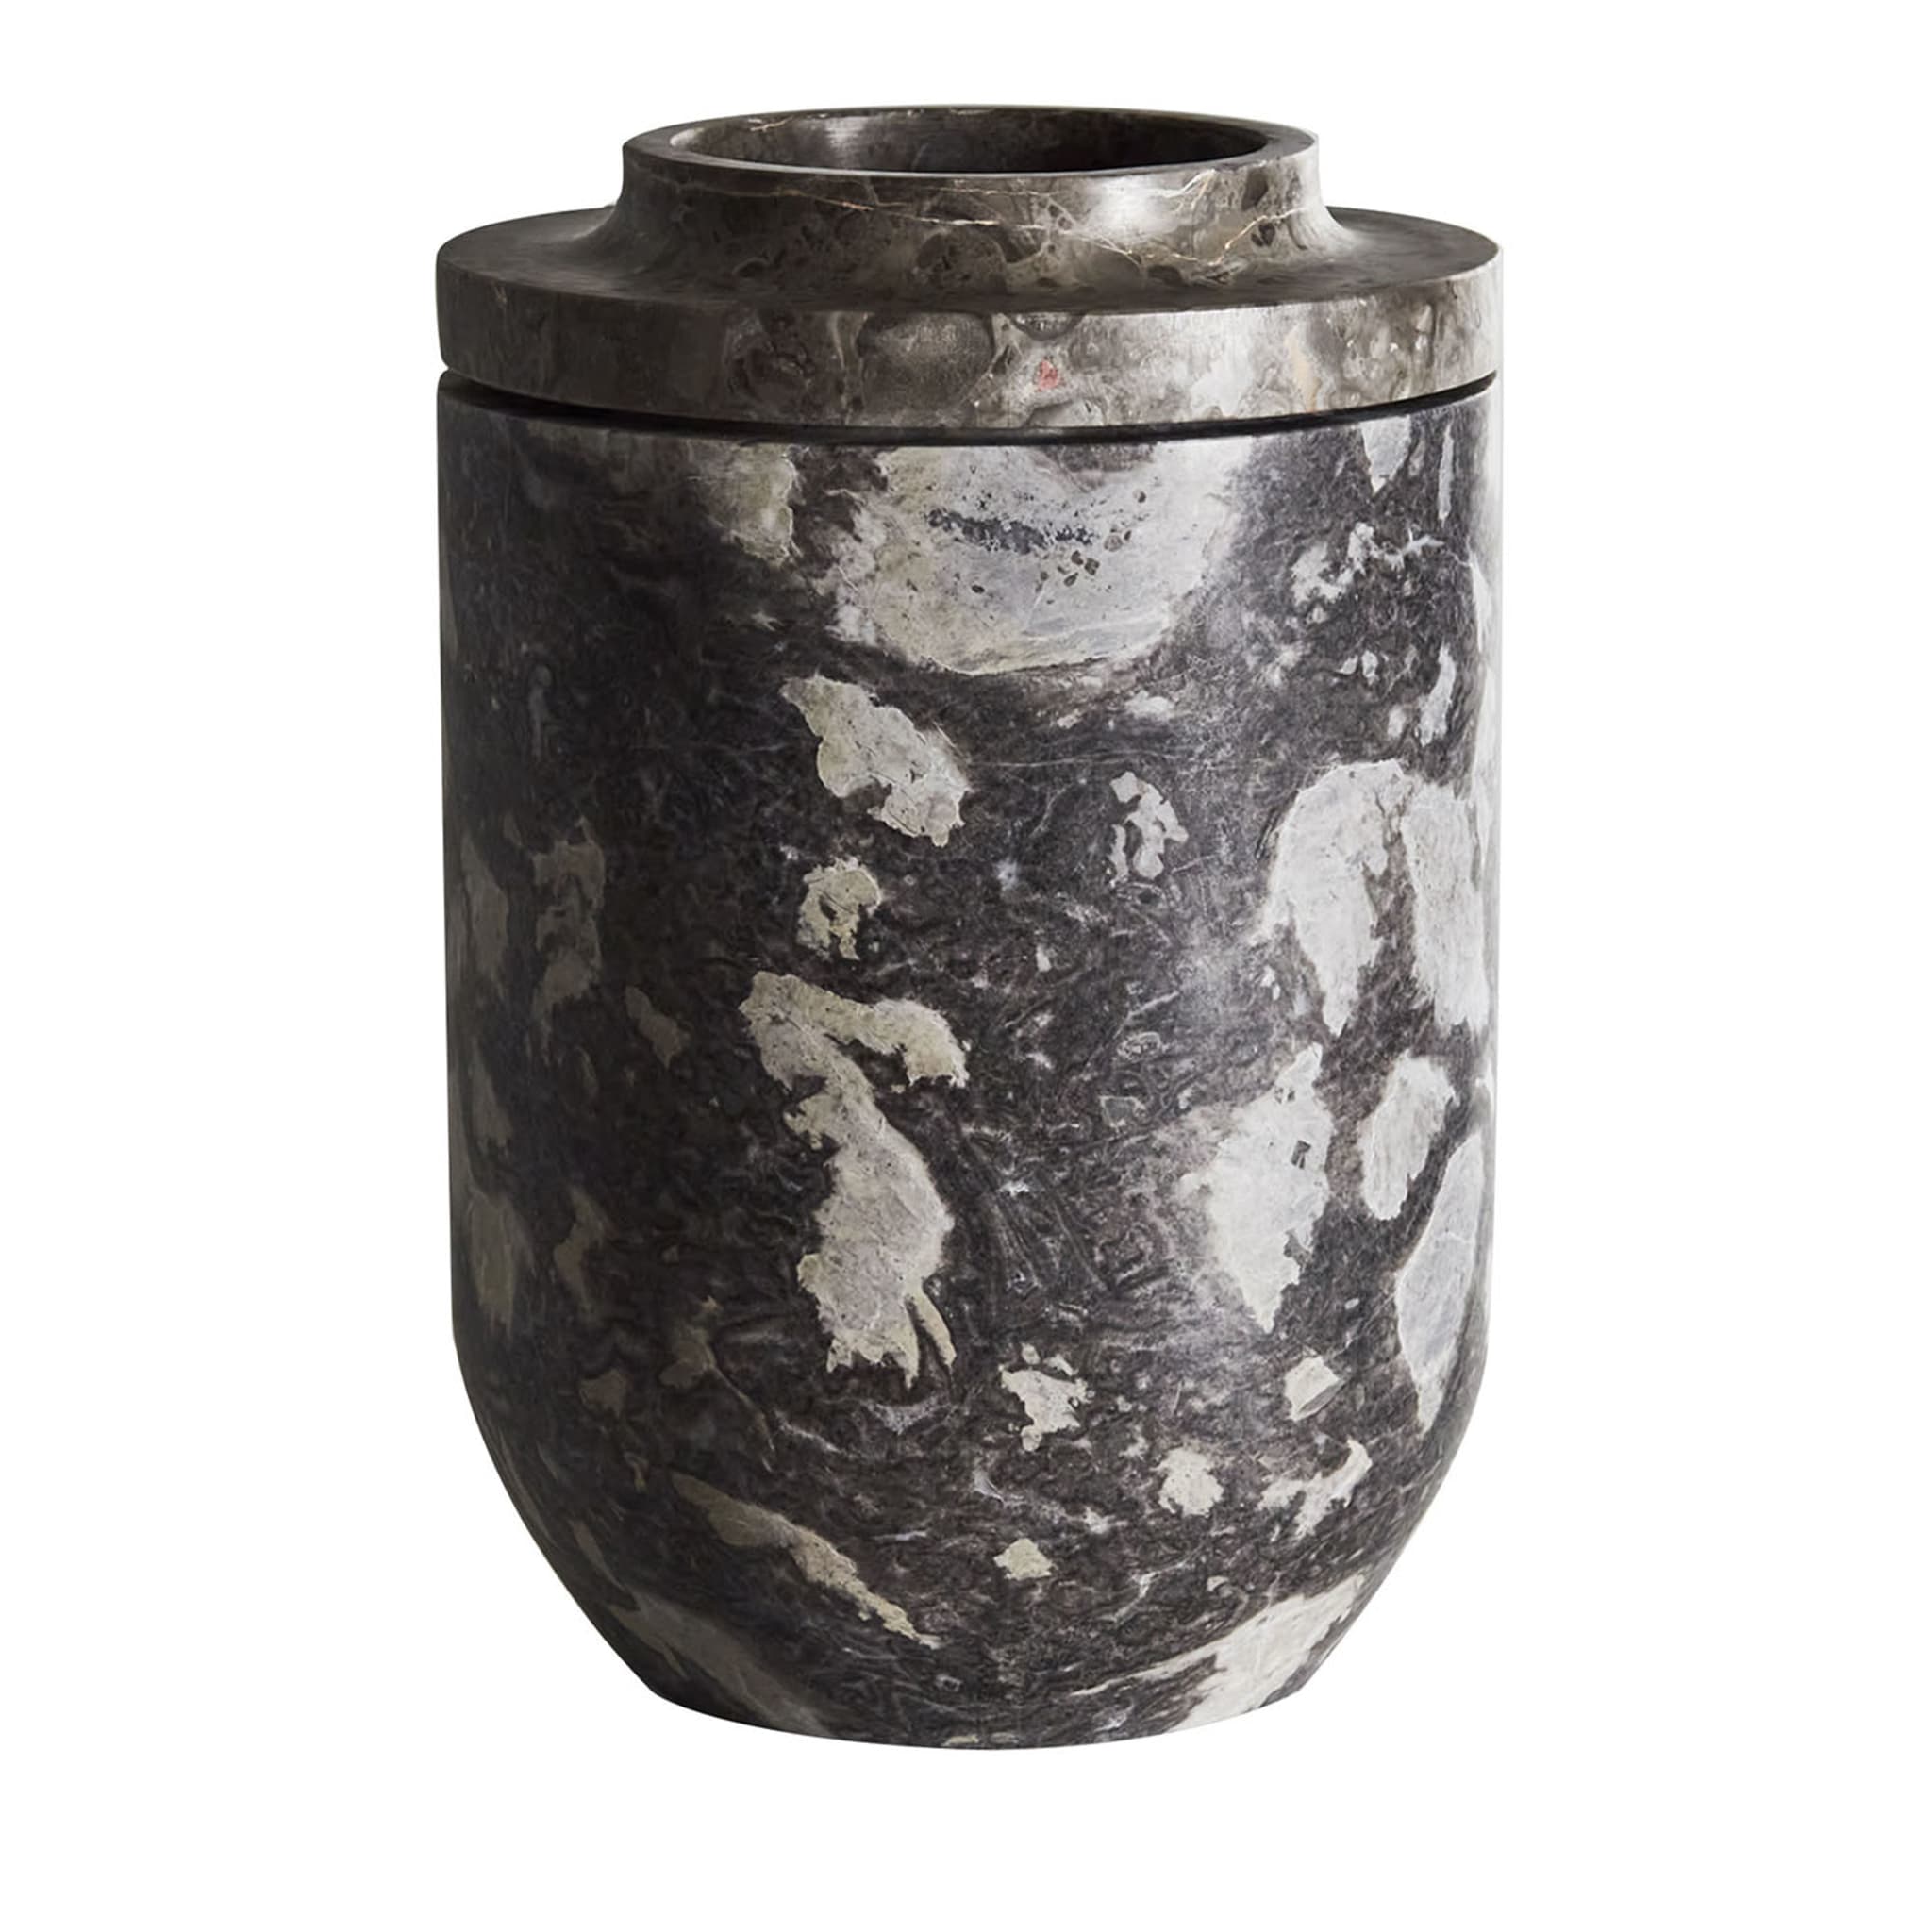 Königliche kleine graue vase von Christophe Pillet - Hauptansicht